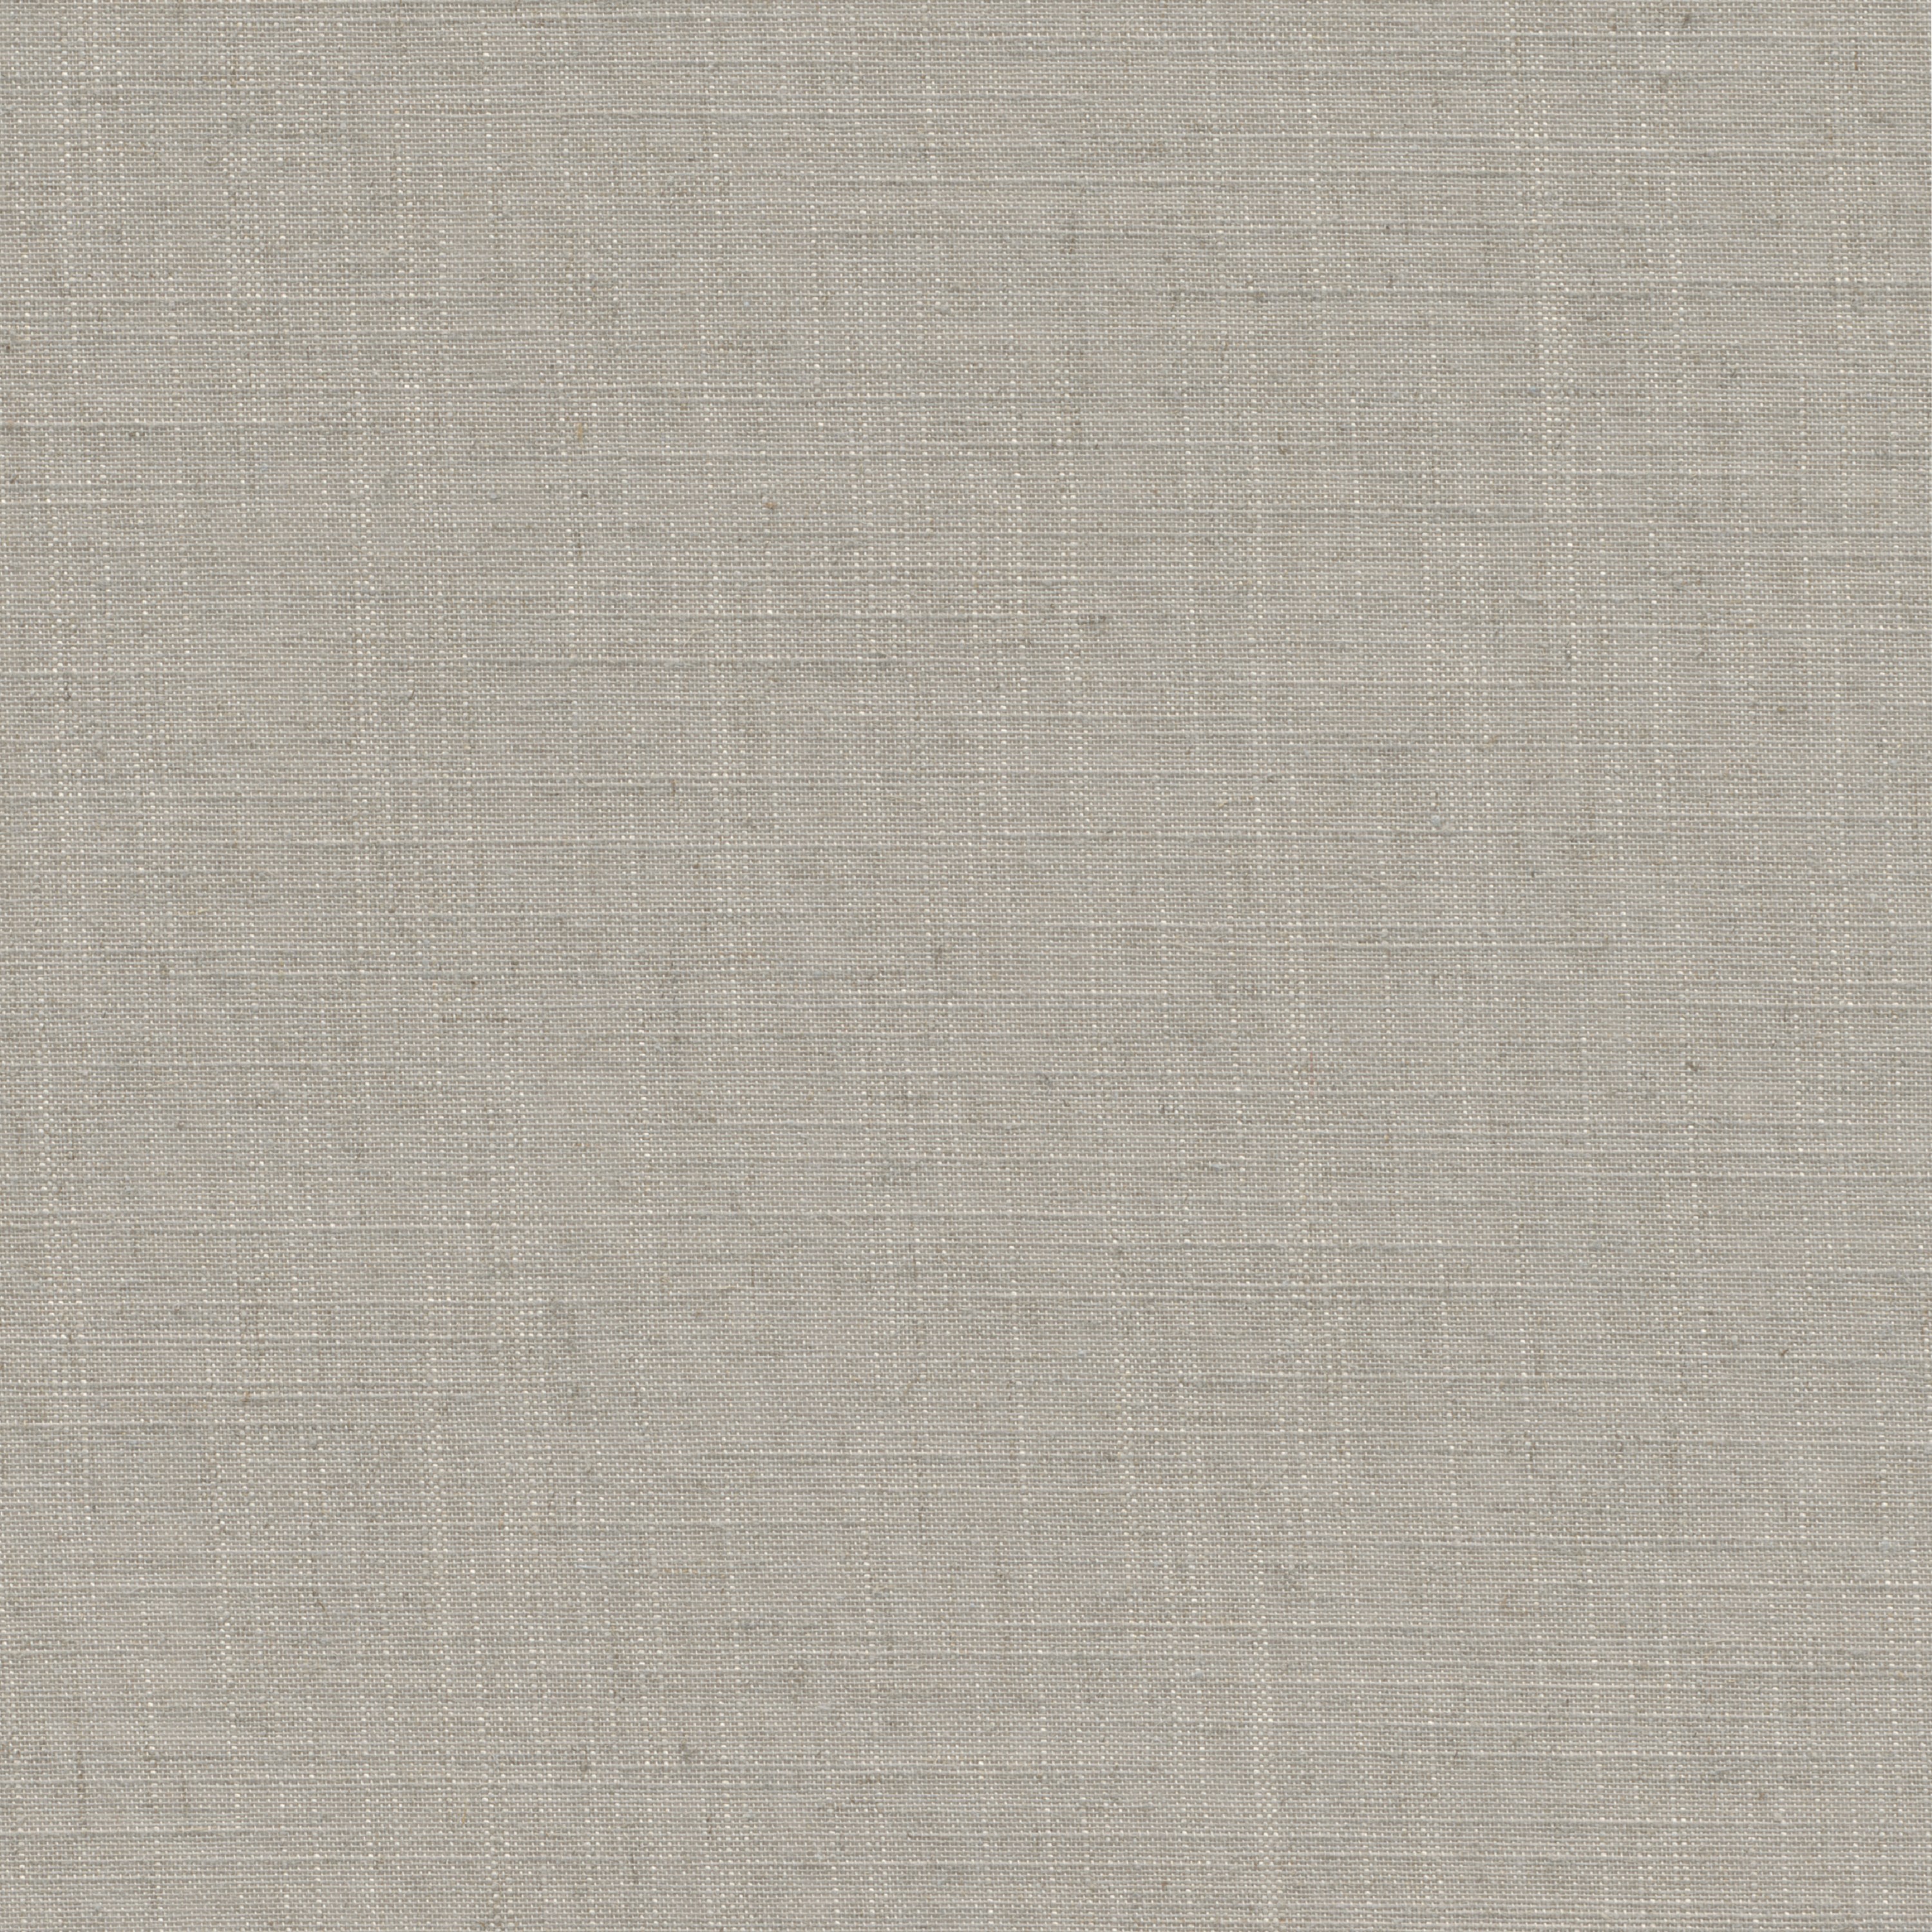 Tessuto per tende a rullo filtrante INSPIRE Brisbane beige 197 x 250 cm - 7